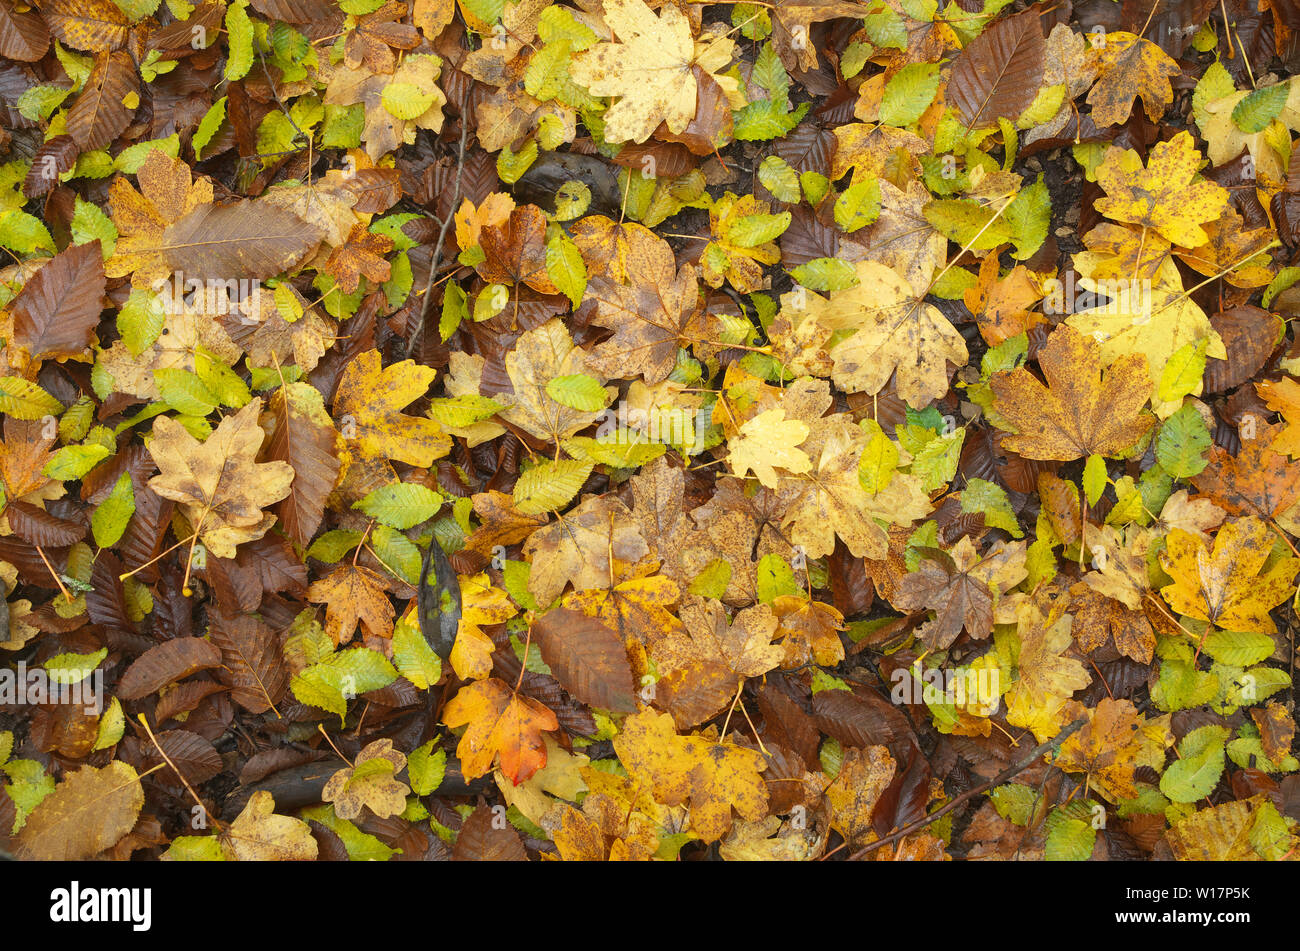 Autumn leaf texture. Nature composition Stock Photo